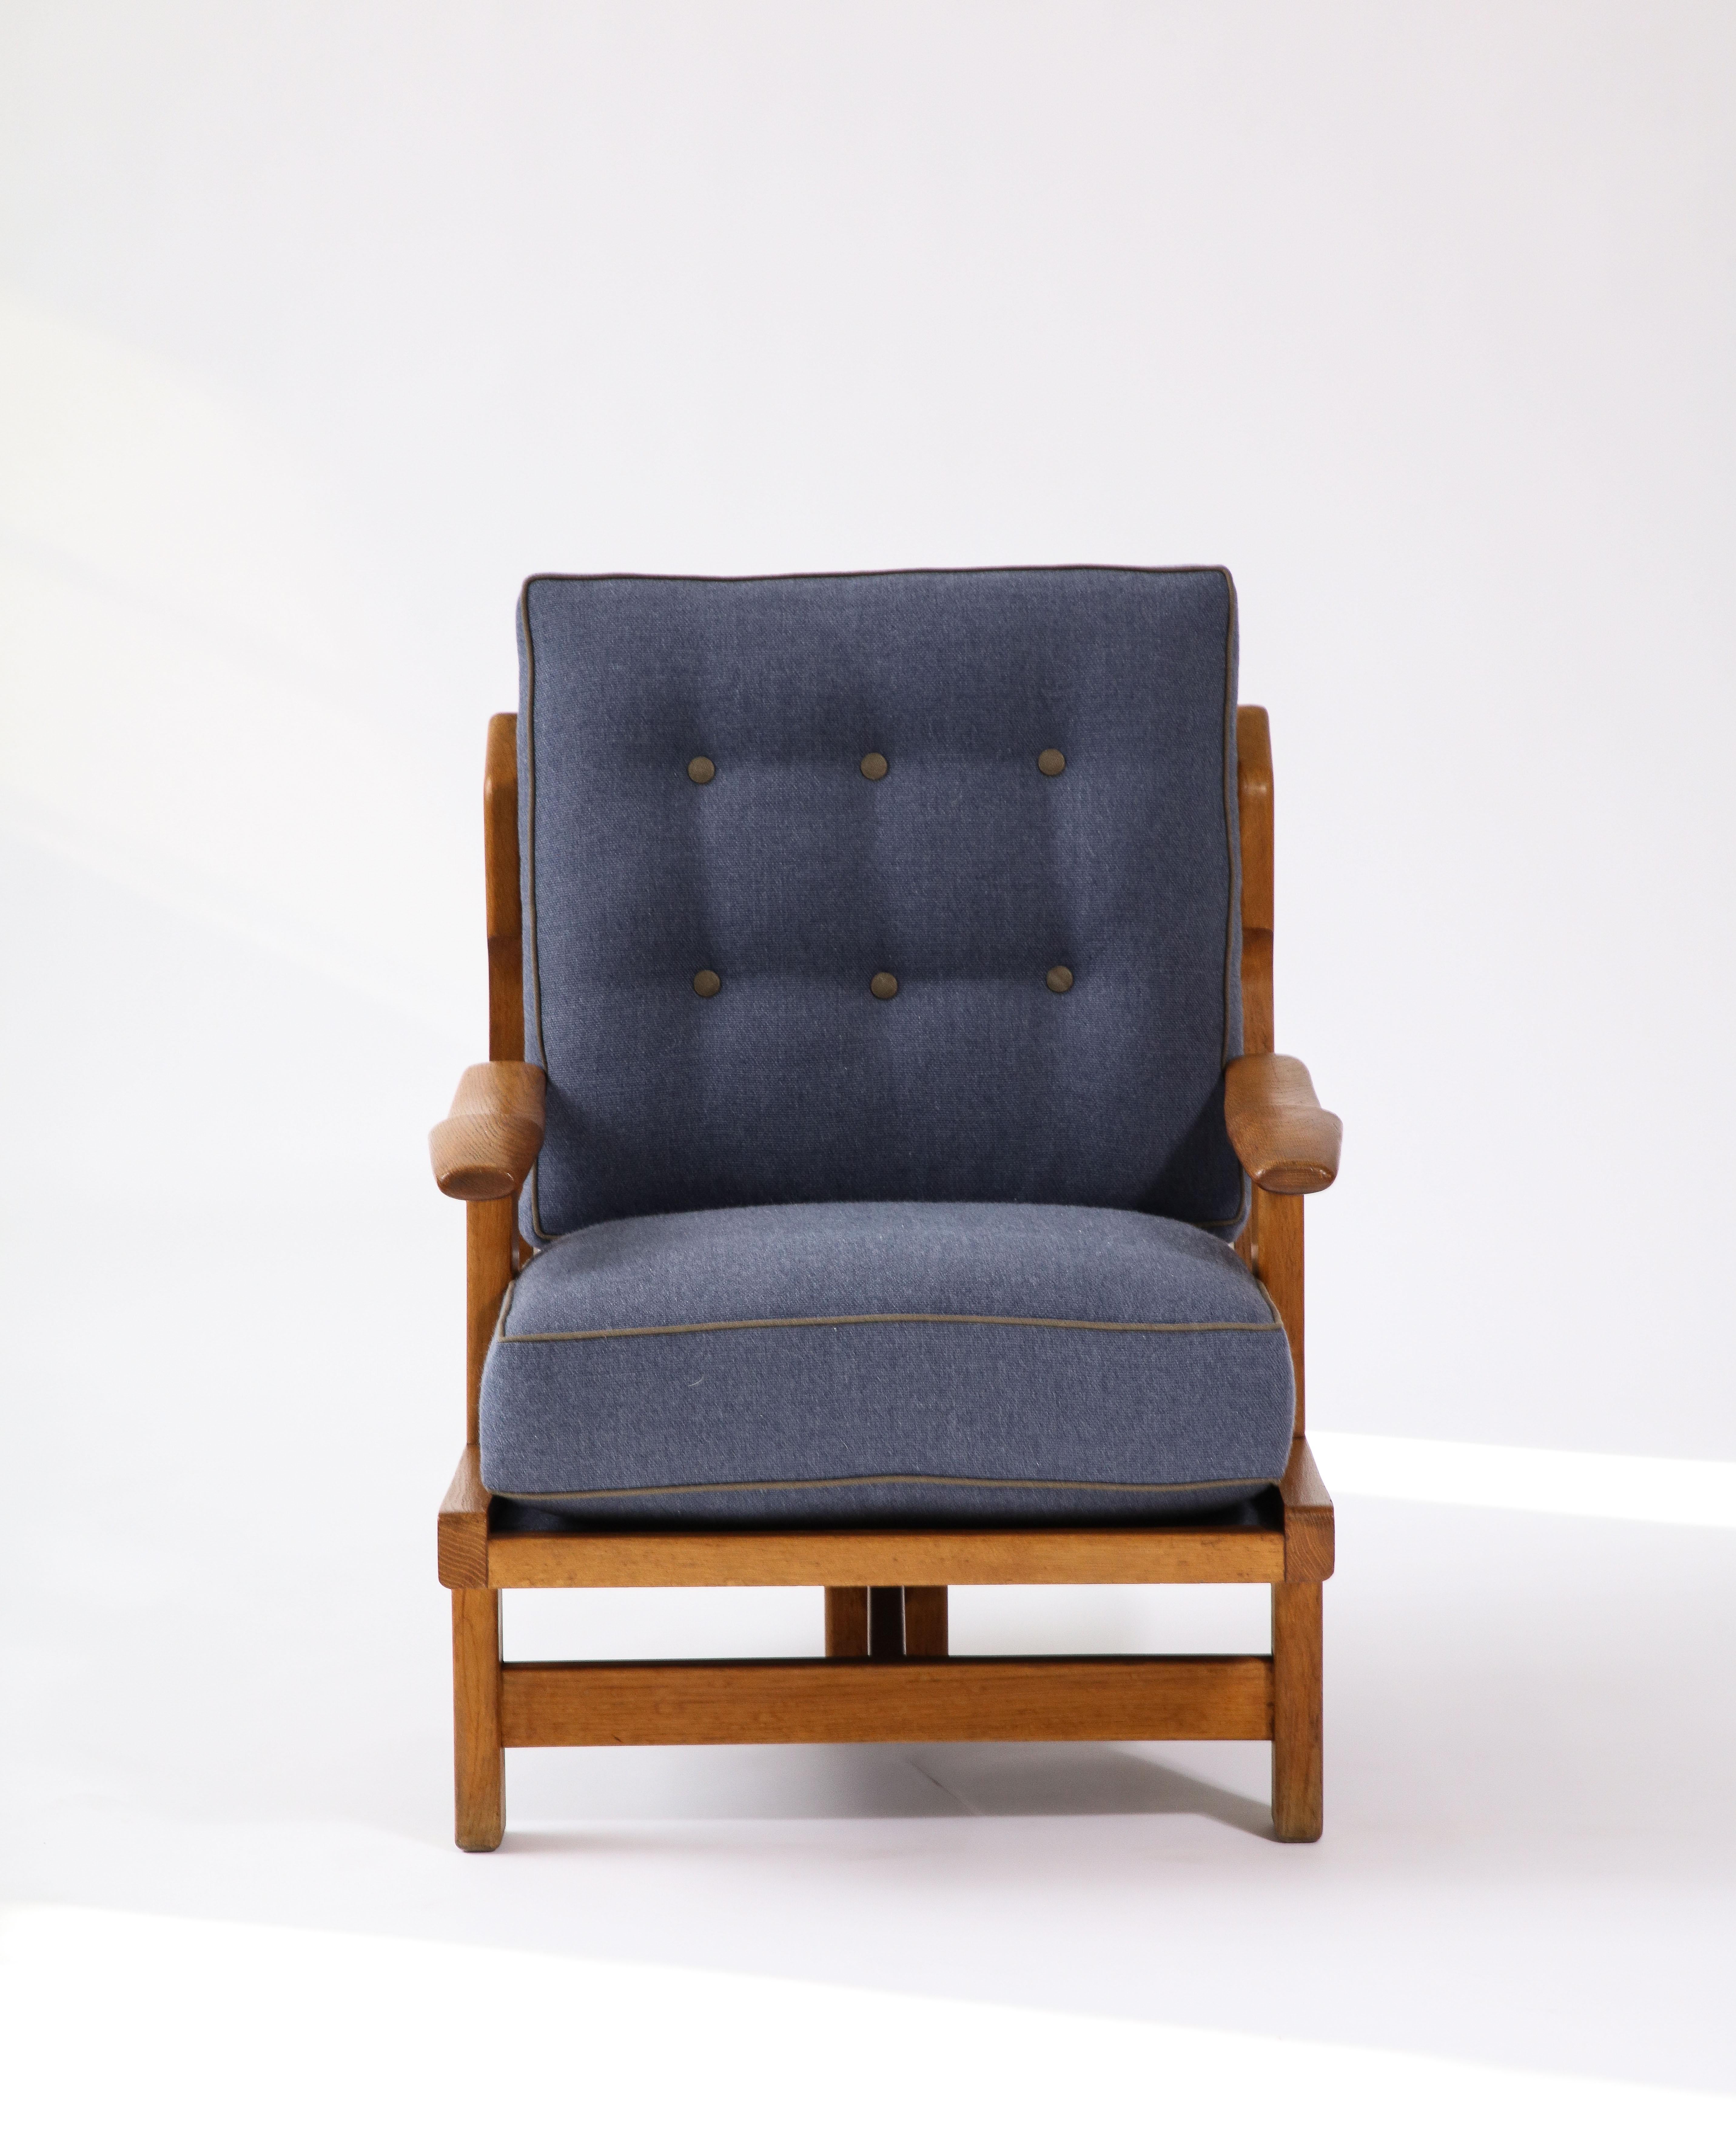 Deux disponibles ; prix individuels. 

Rare fauteuil tripode sculptural de Guillerme et Chambron. Cette chaise est incroyablement confortable, avec de nouveaux coussins tapissés de lin marine avec des passepoils et des boutons contrastés de couleur